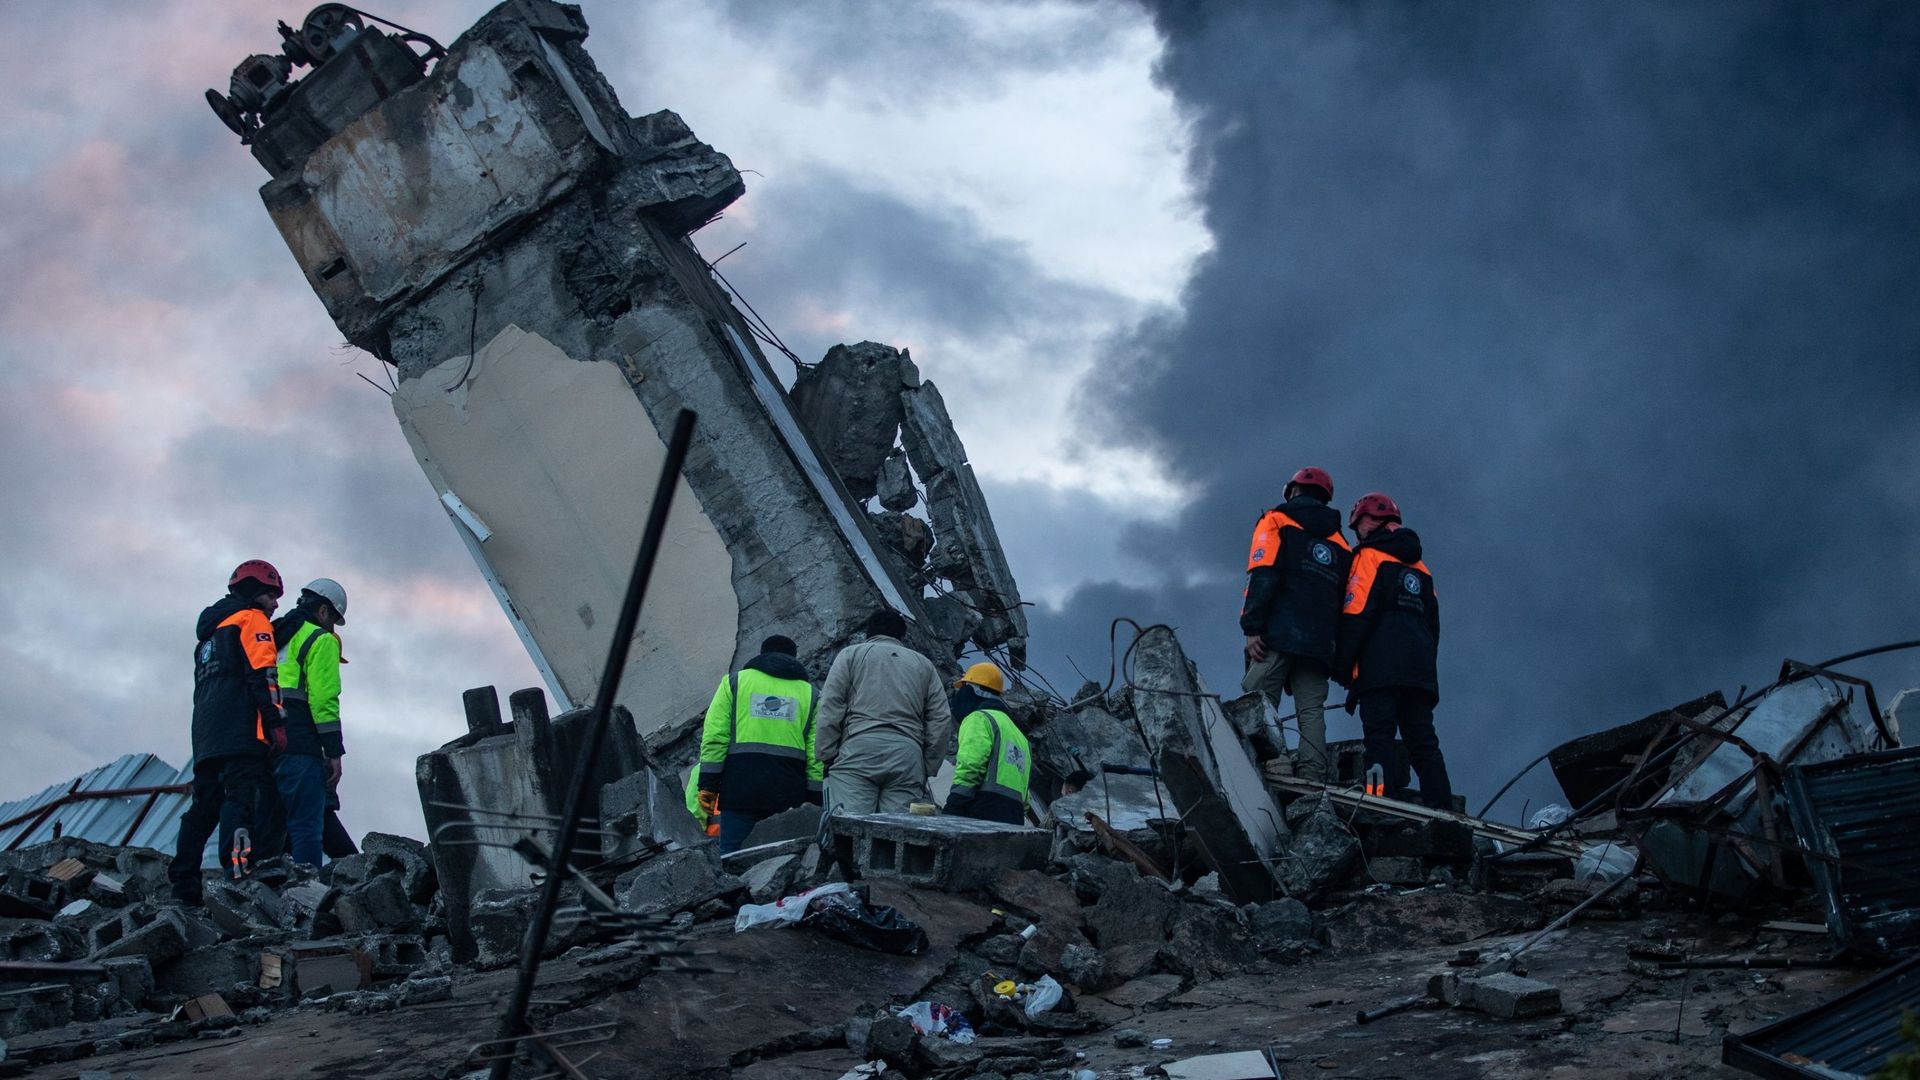 Des secouristes travaillent sur les lieux de l'effondrement d'un bâtiment le 07 février 2023 à Iskenderun, en Turquie. Un tremblement de terre de magnitude 7,8 a frappé près de Gaziantep, en Turquie, aux premières heures de lundi, suivi d'une autre secous